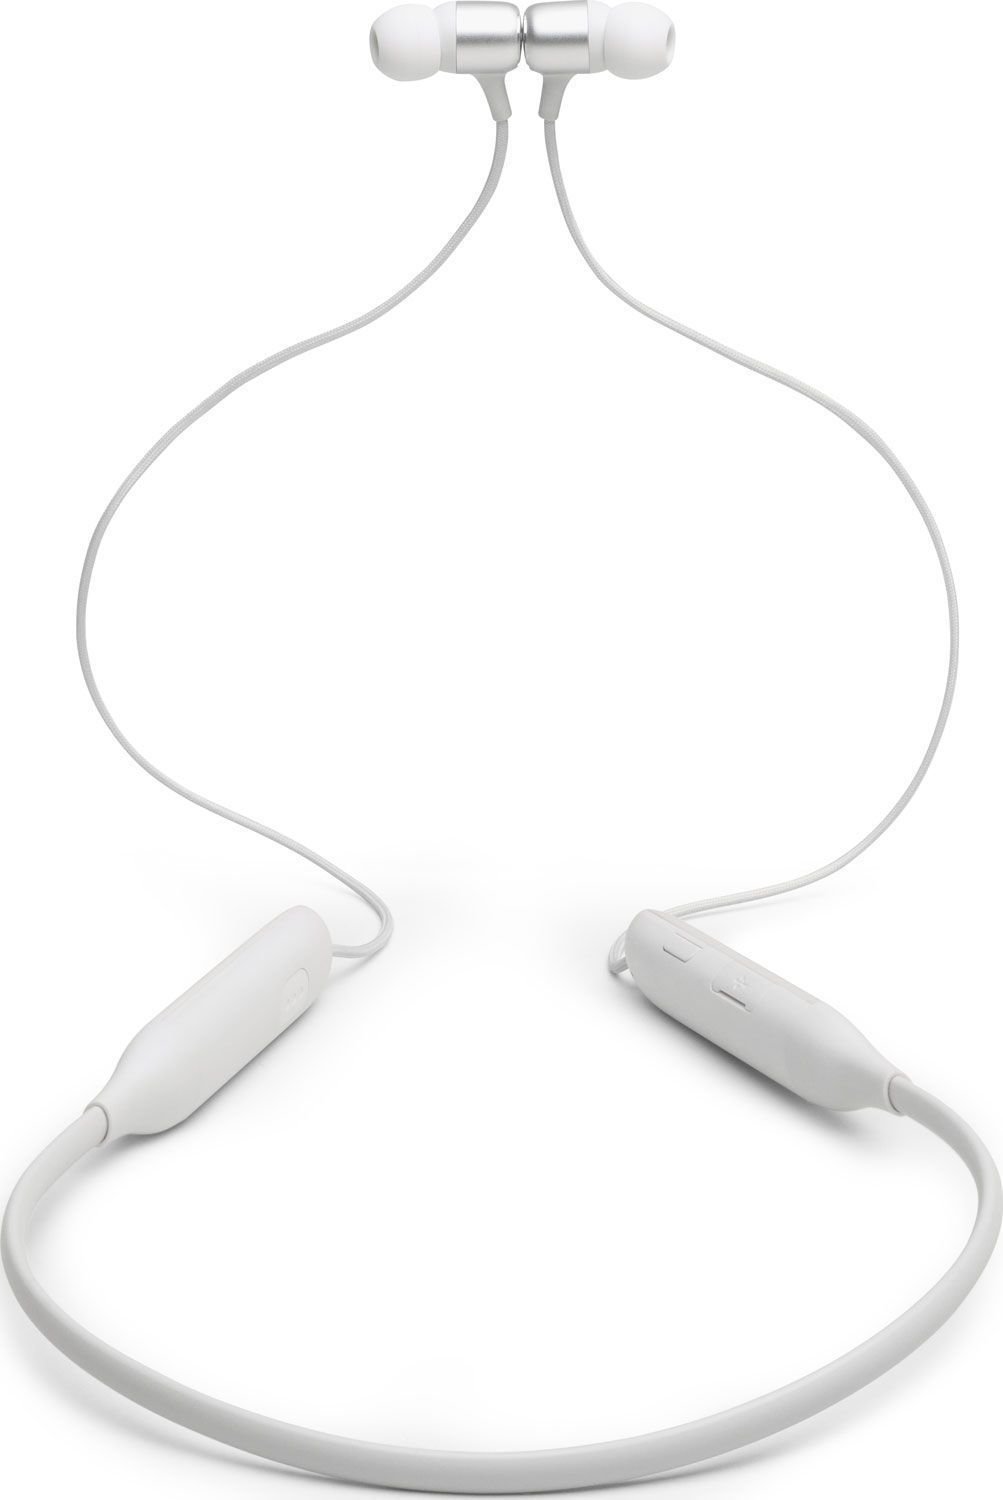 Bezdrátové sluchátka do uší JBL Live 220BT Bílá